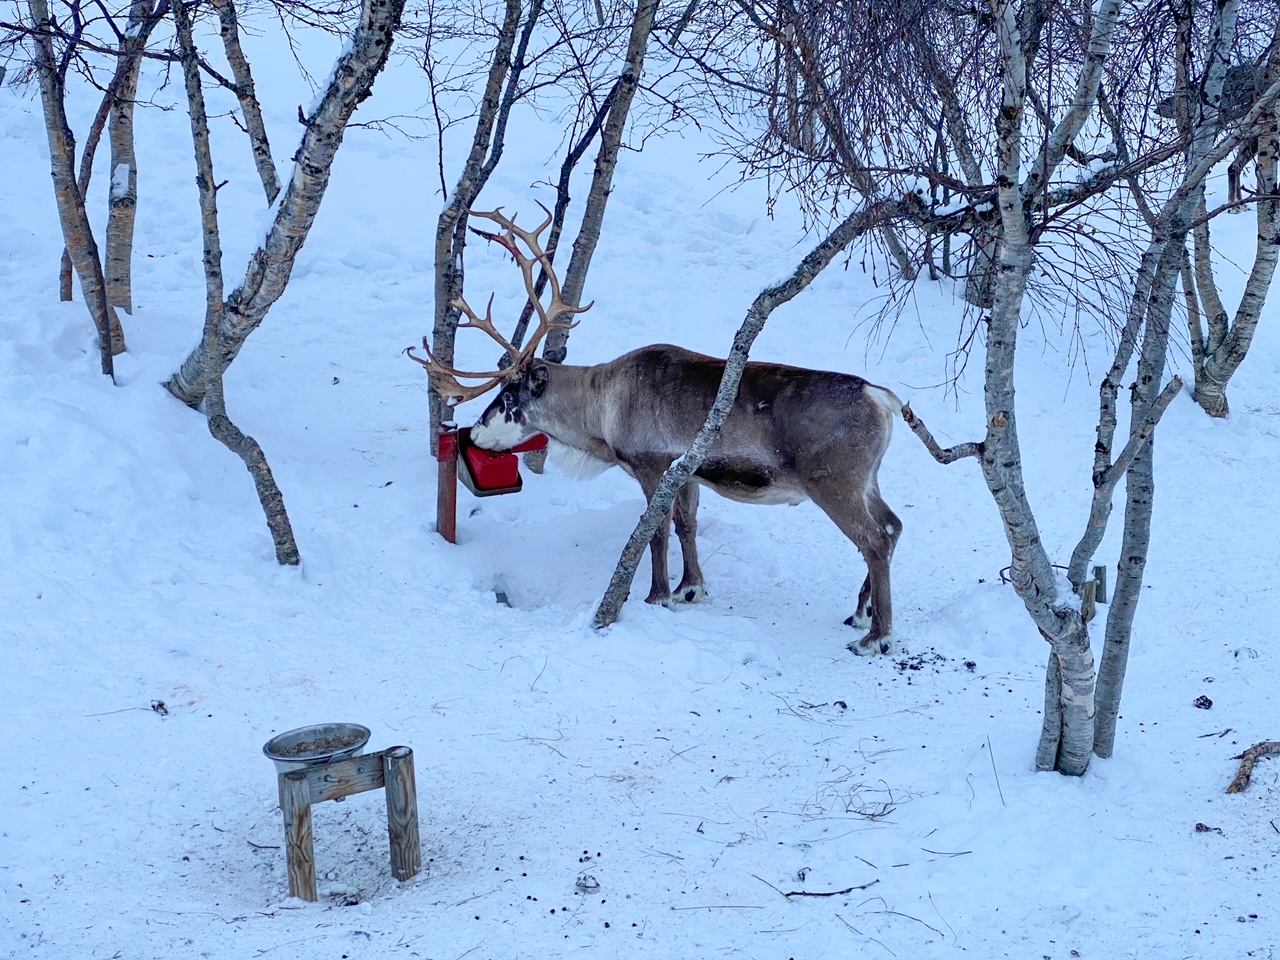 watching the reindeer eat at the Snowhotel in Kirkenes